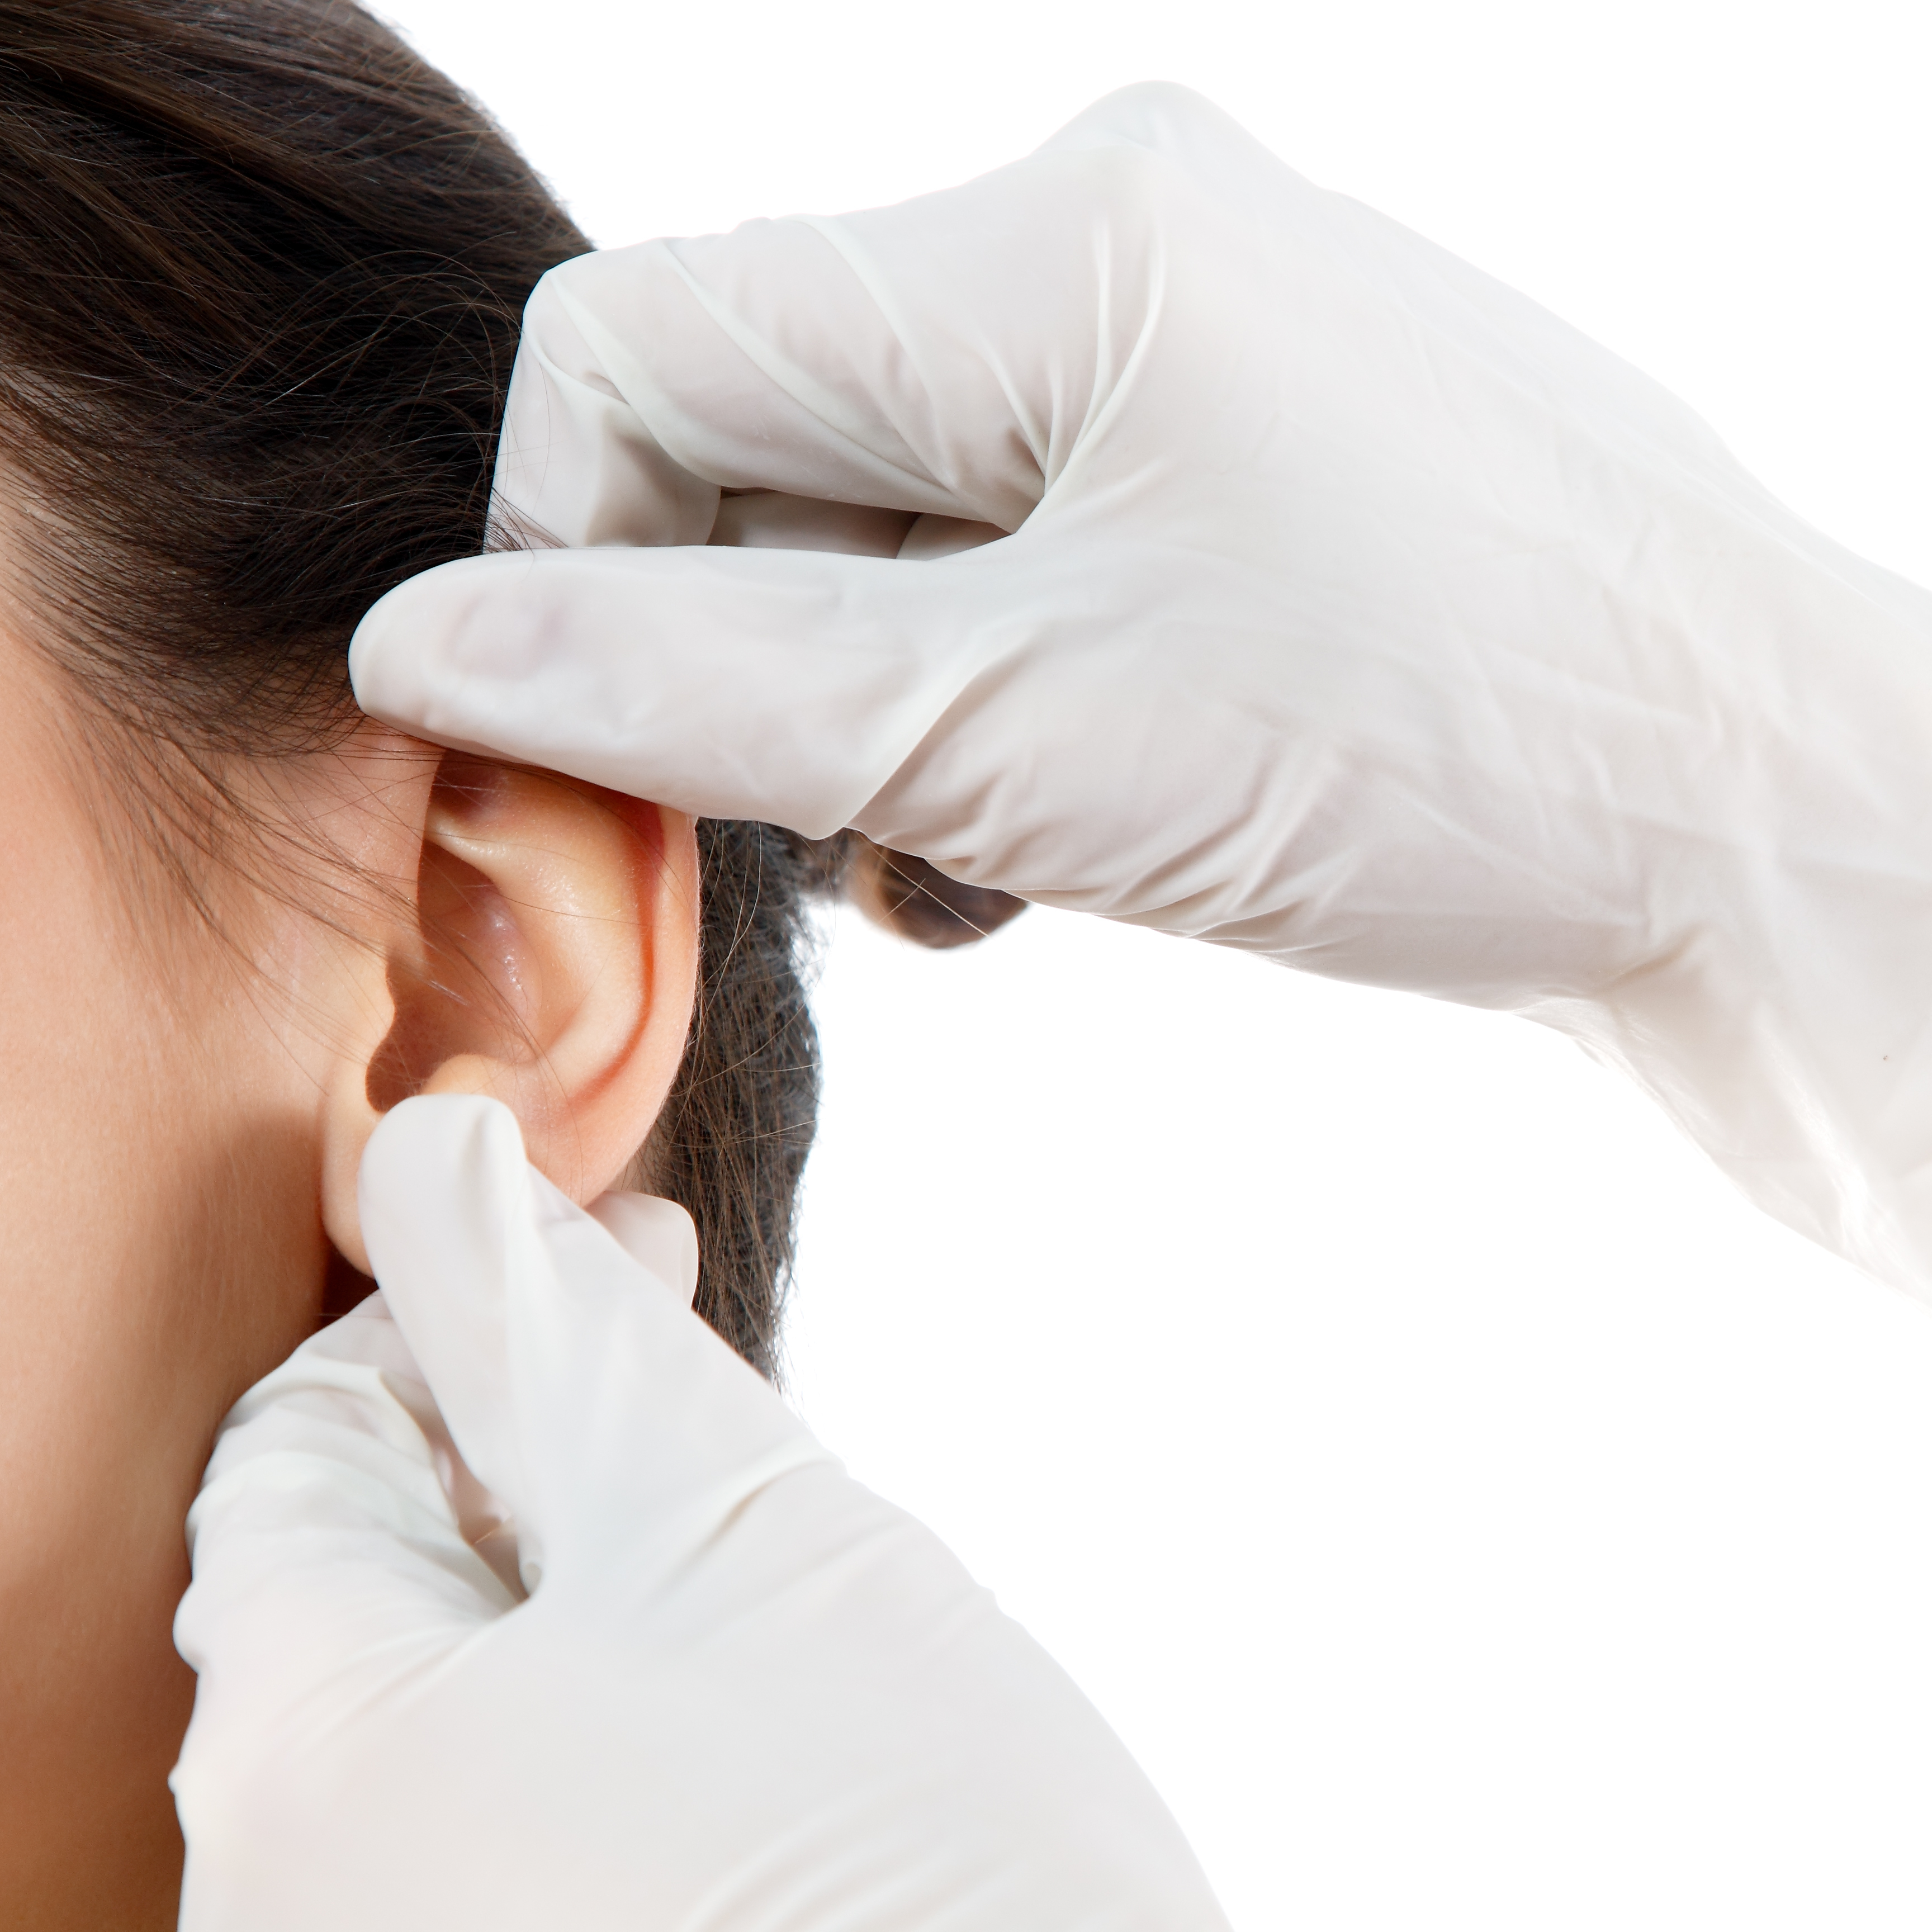 La cirugía de orejas devuelve la apariencia natural y armónica a esta parte de la cara.